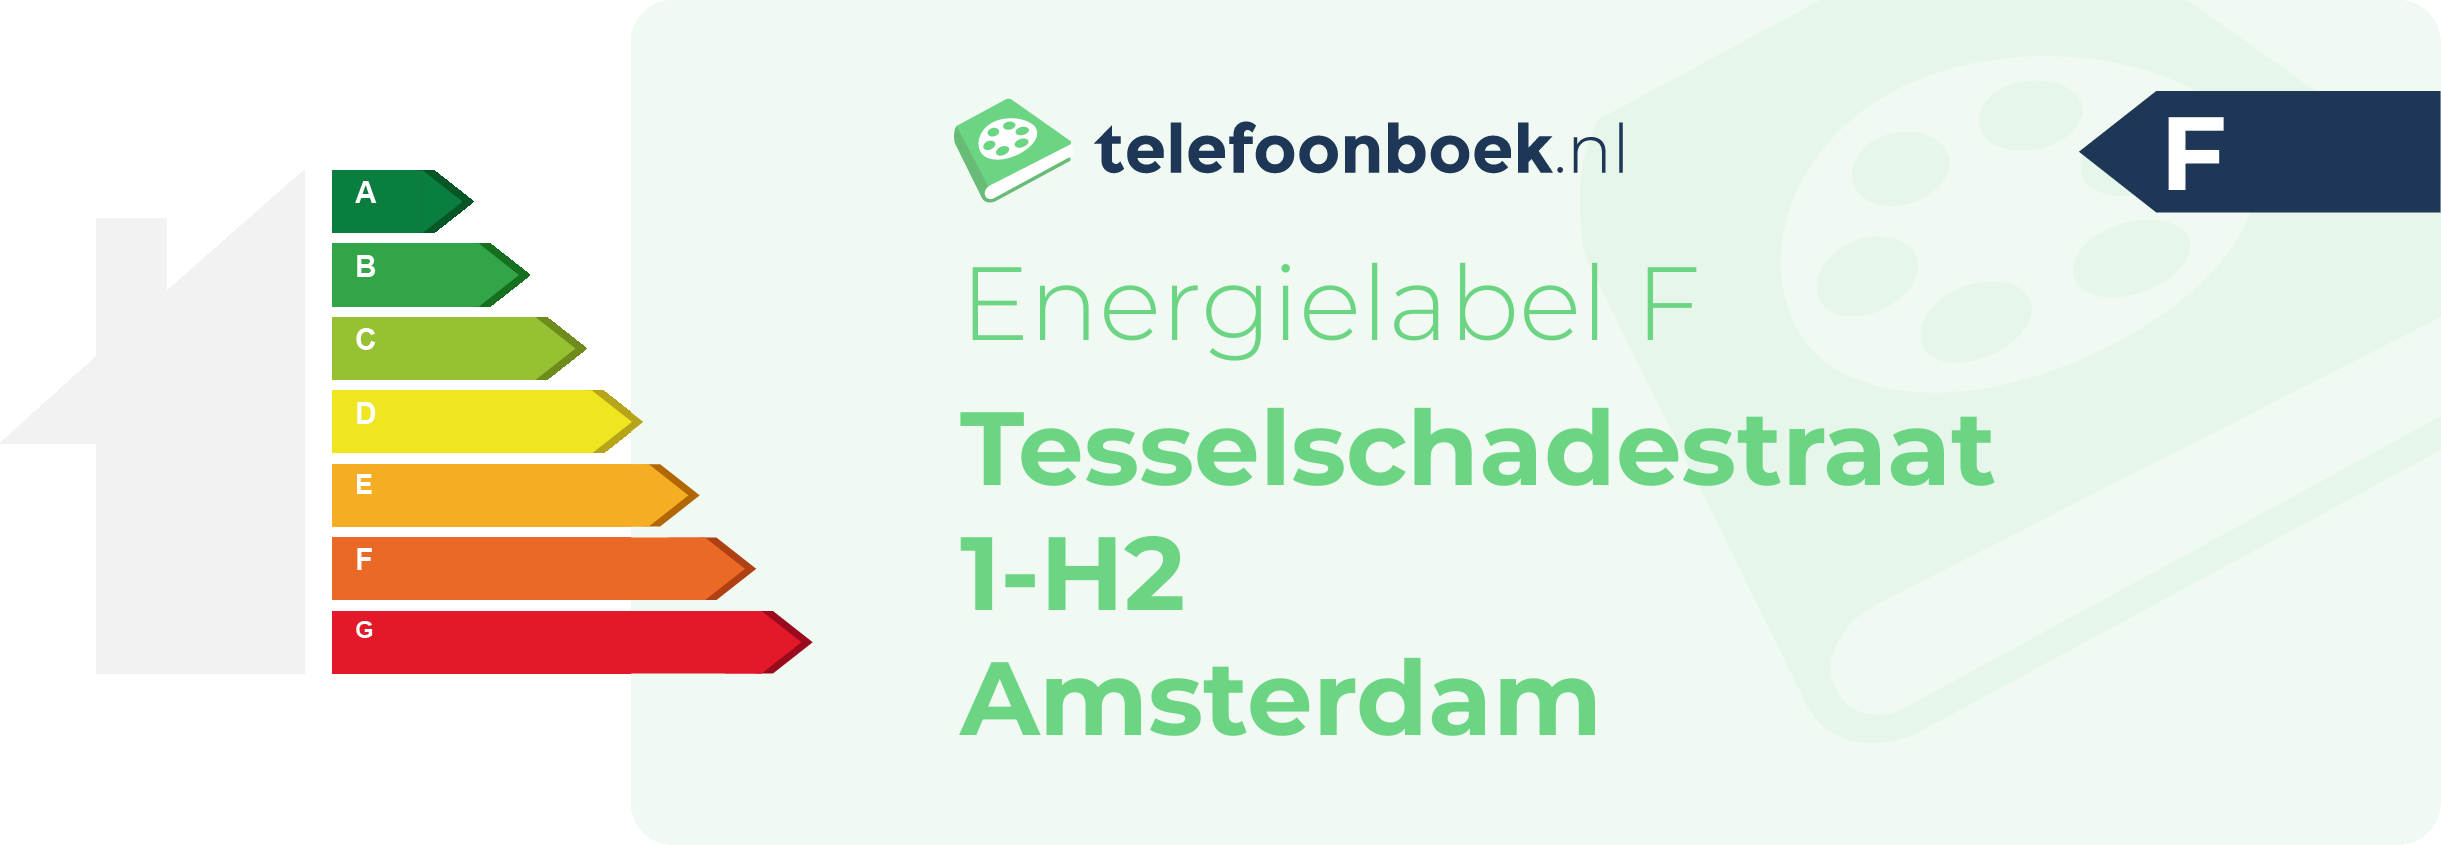 Energielabel Tesselschadestraat 1-H2 Amsterdam